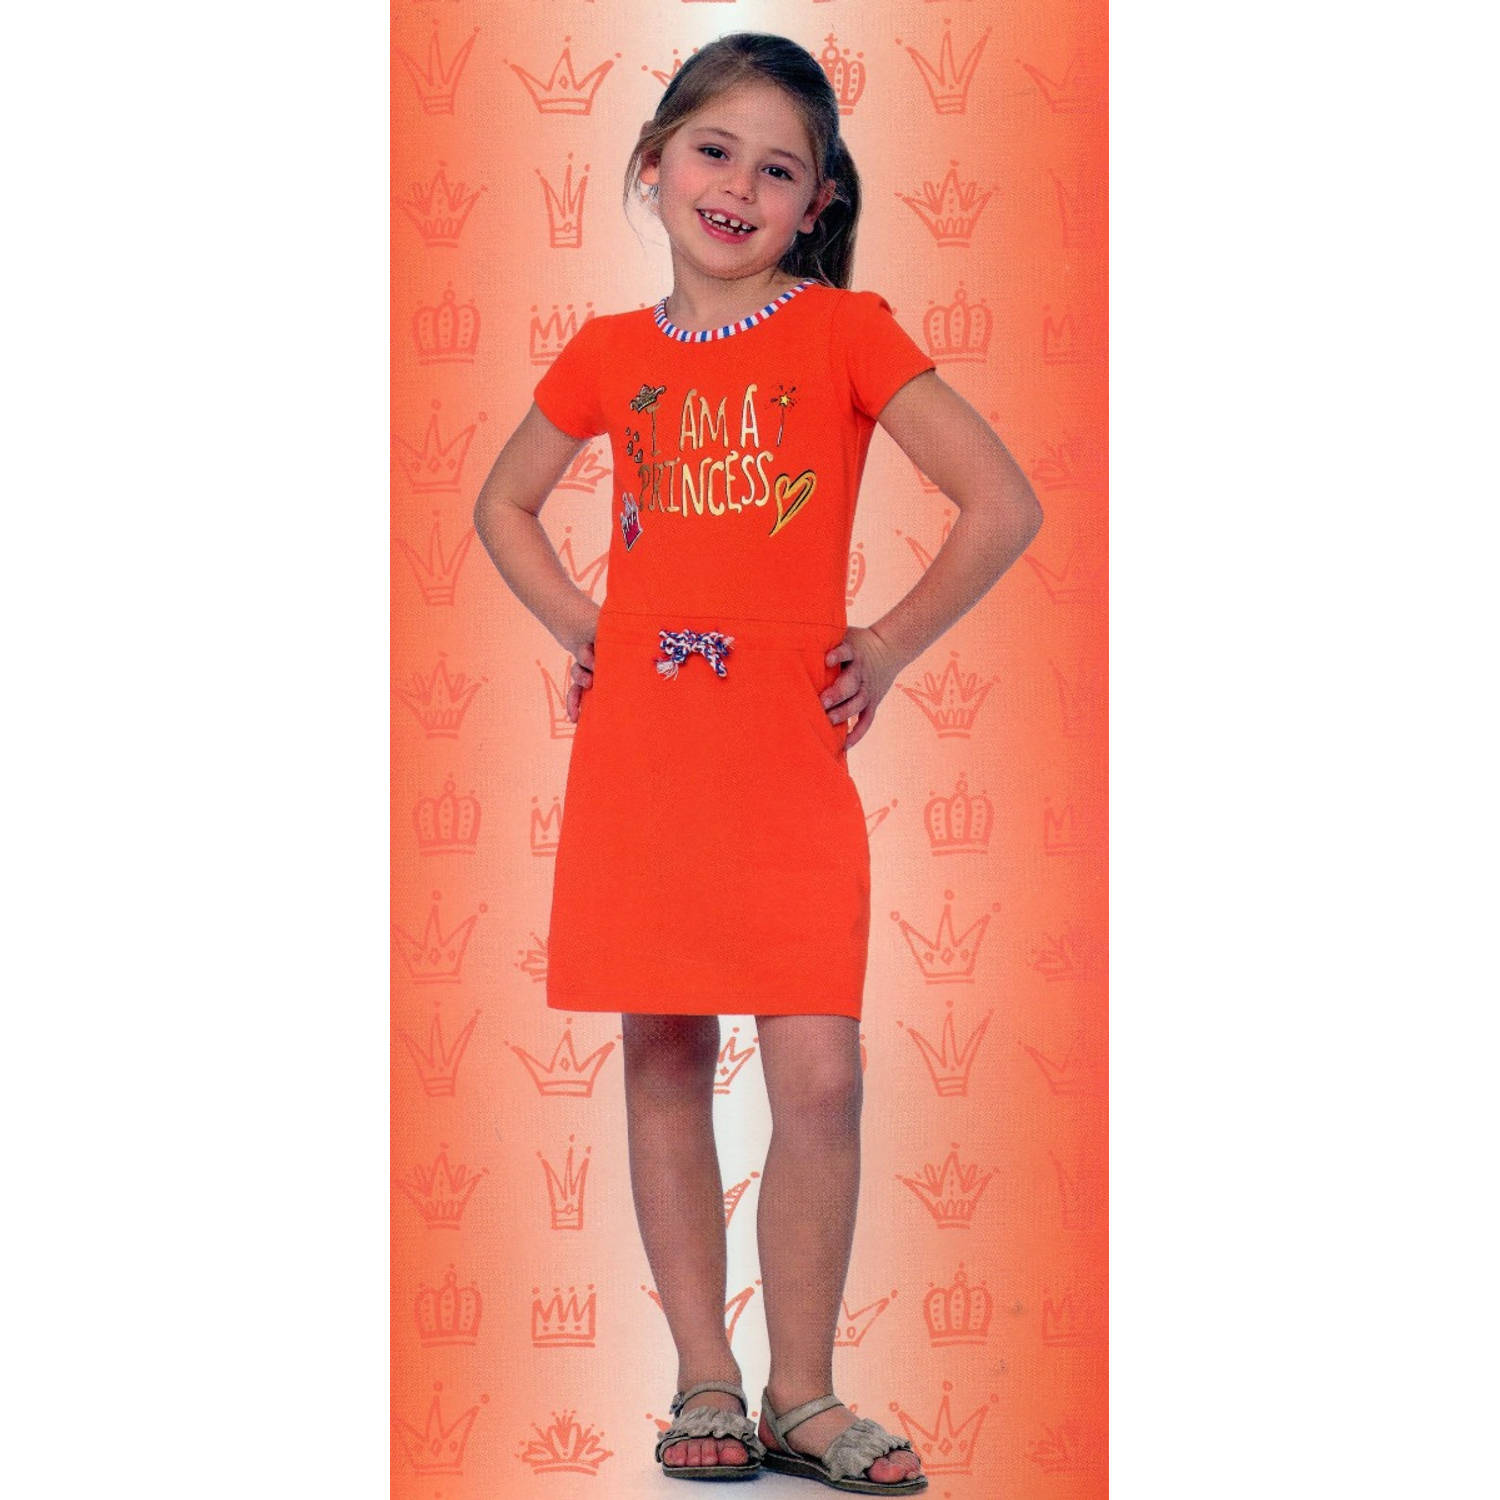 Ambacht Wolkenkrabber Dicteren Oranje Meisjes T-shirt Jurk - I Am A Princess - Voor Koningsdag - Holland -  Maat: 98/104 | Blokker